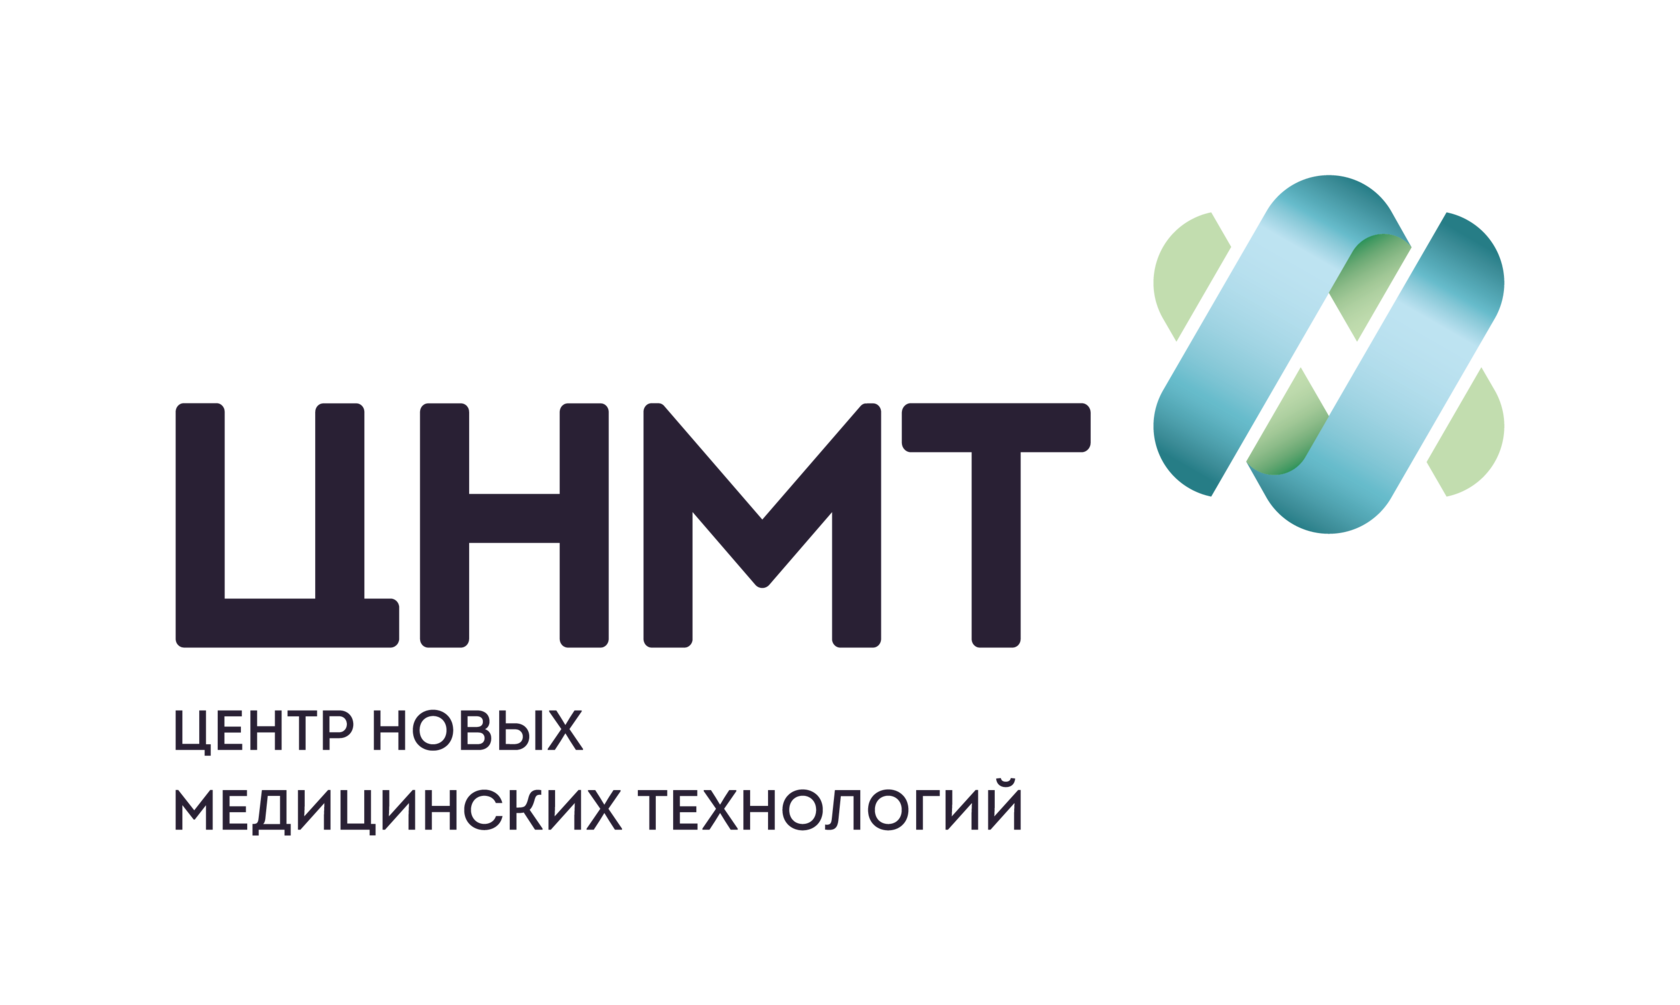 Сайт цнмт в новосибирске. ЦНМТ Новосибирск логотип. Центр новых медицинских технологий. Центр новых медицинских технологий Новосибирск.